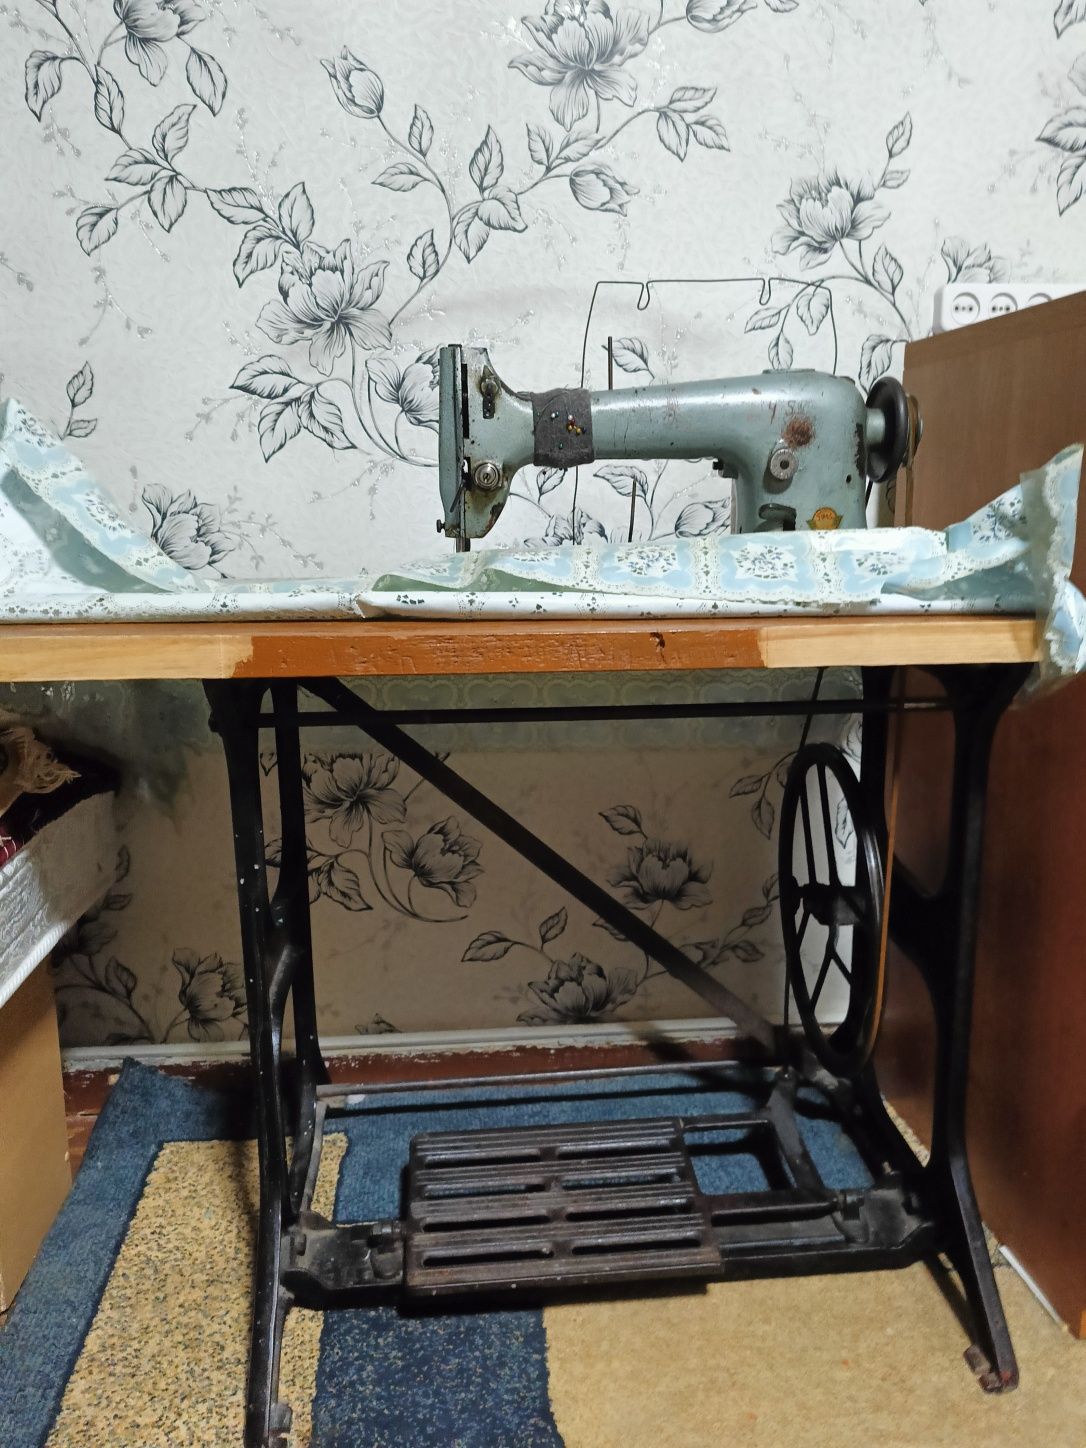 Продам производственную швейную  машинку ПМЗ, переделанную на ножную.